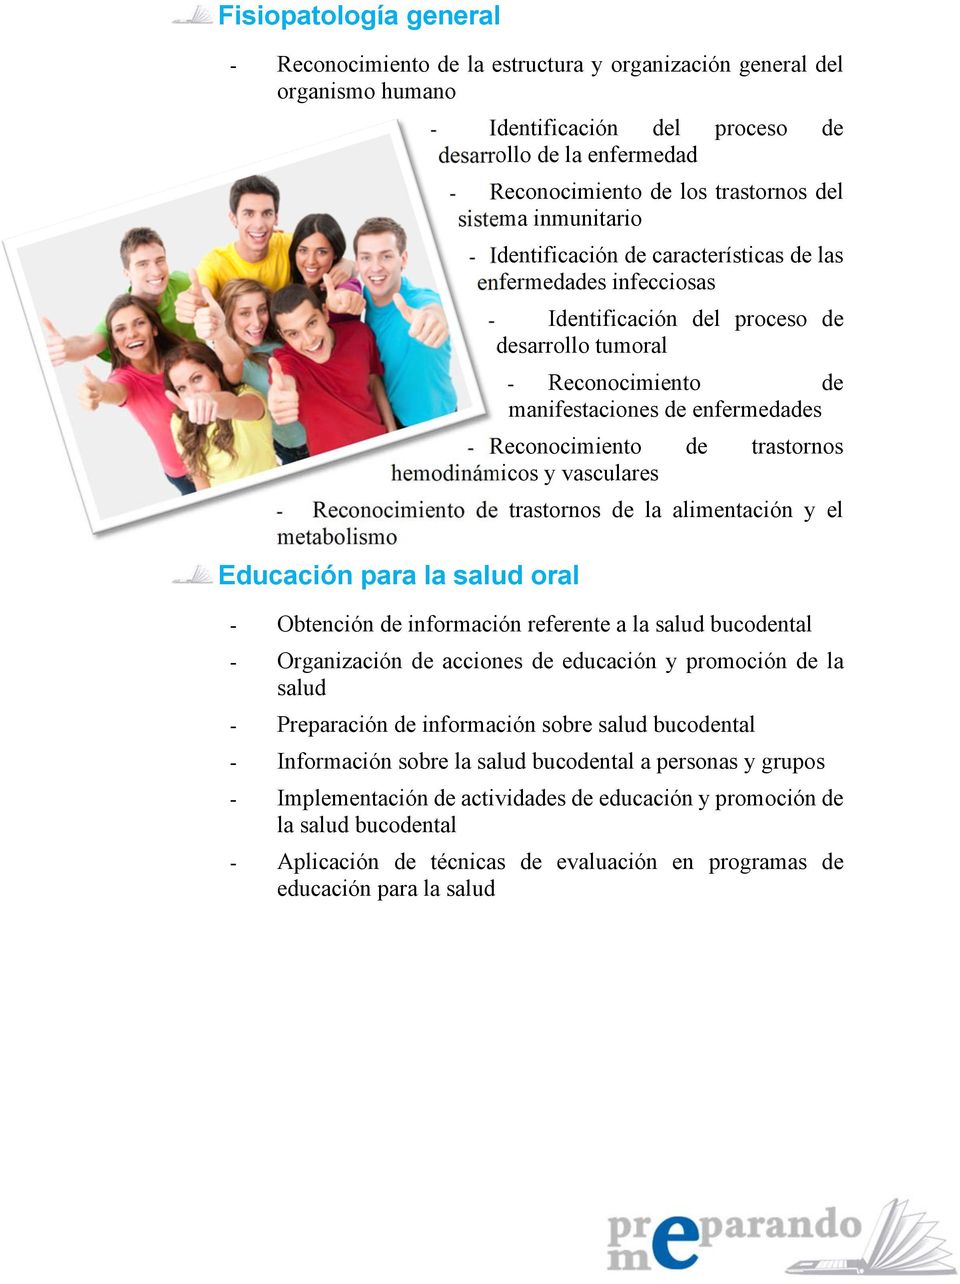 Reconocimiento de trastornos hemodinámicos y vasculares - Reconocimiento de trastornos de la alimentación y el metabolismo Educación para la salud oral - Obtención de información referente a la salud